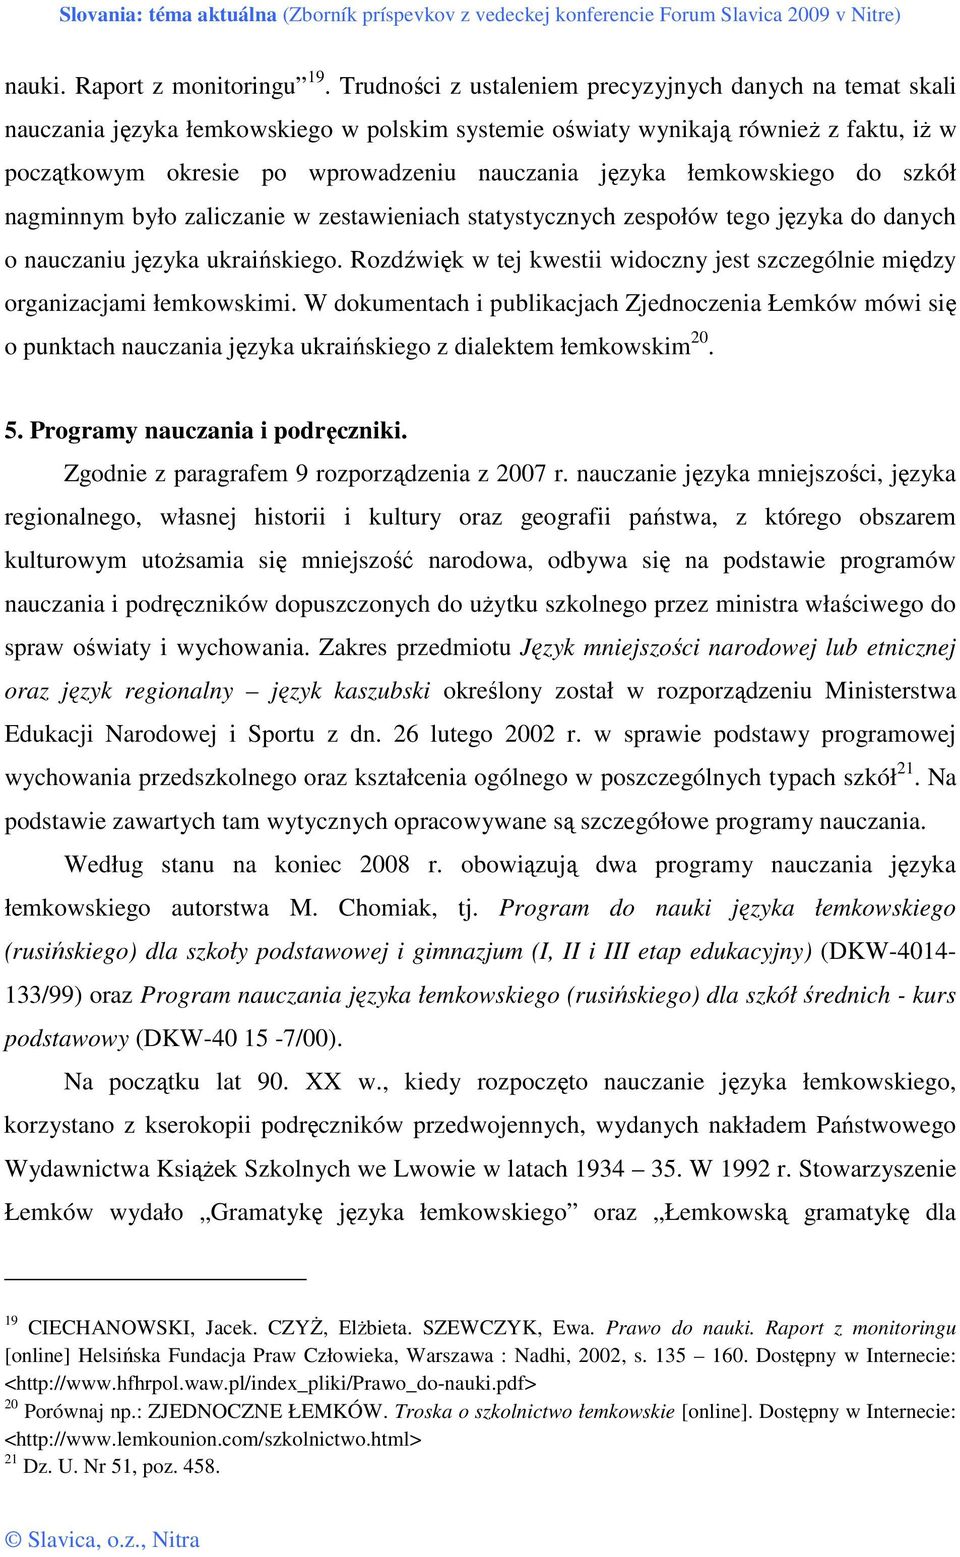 łemkowskiego do szkół nagminnym było zaliczanie w zestawieniach statystycznych zespołów tego języka do danych o nauczaniu języka ukraińskiego.